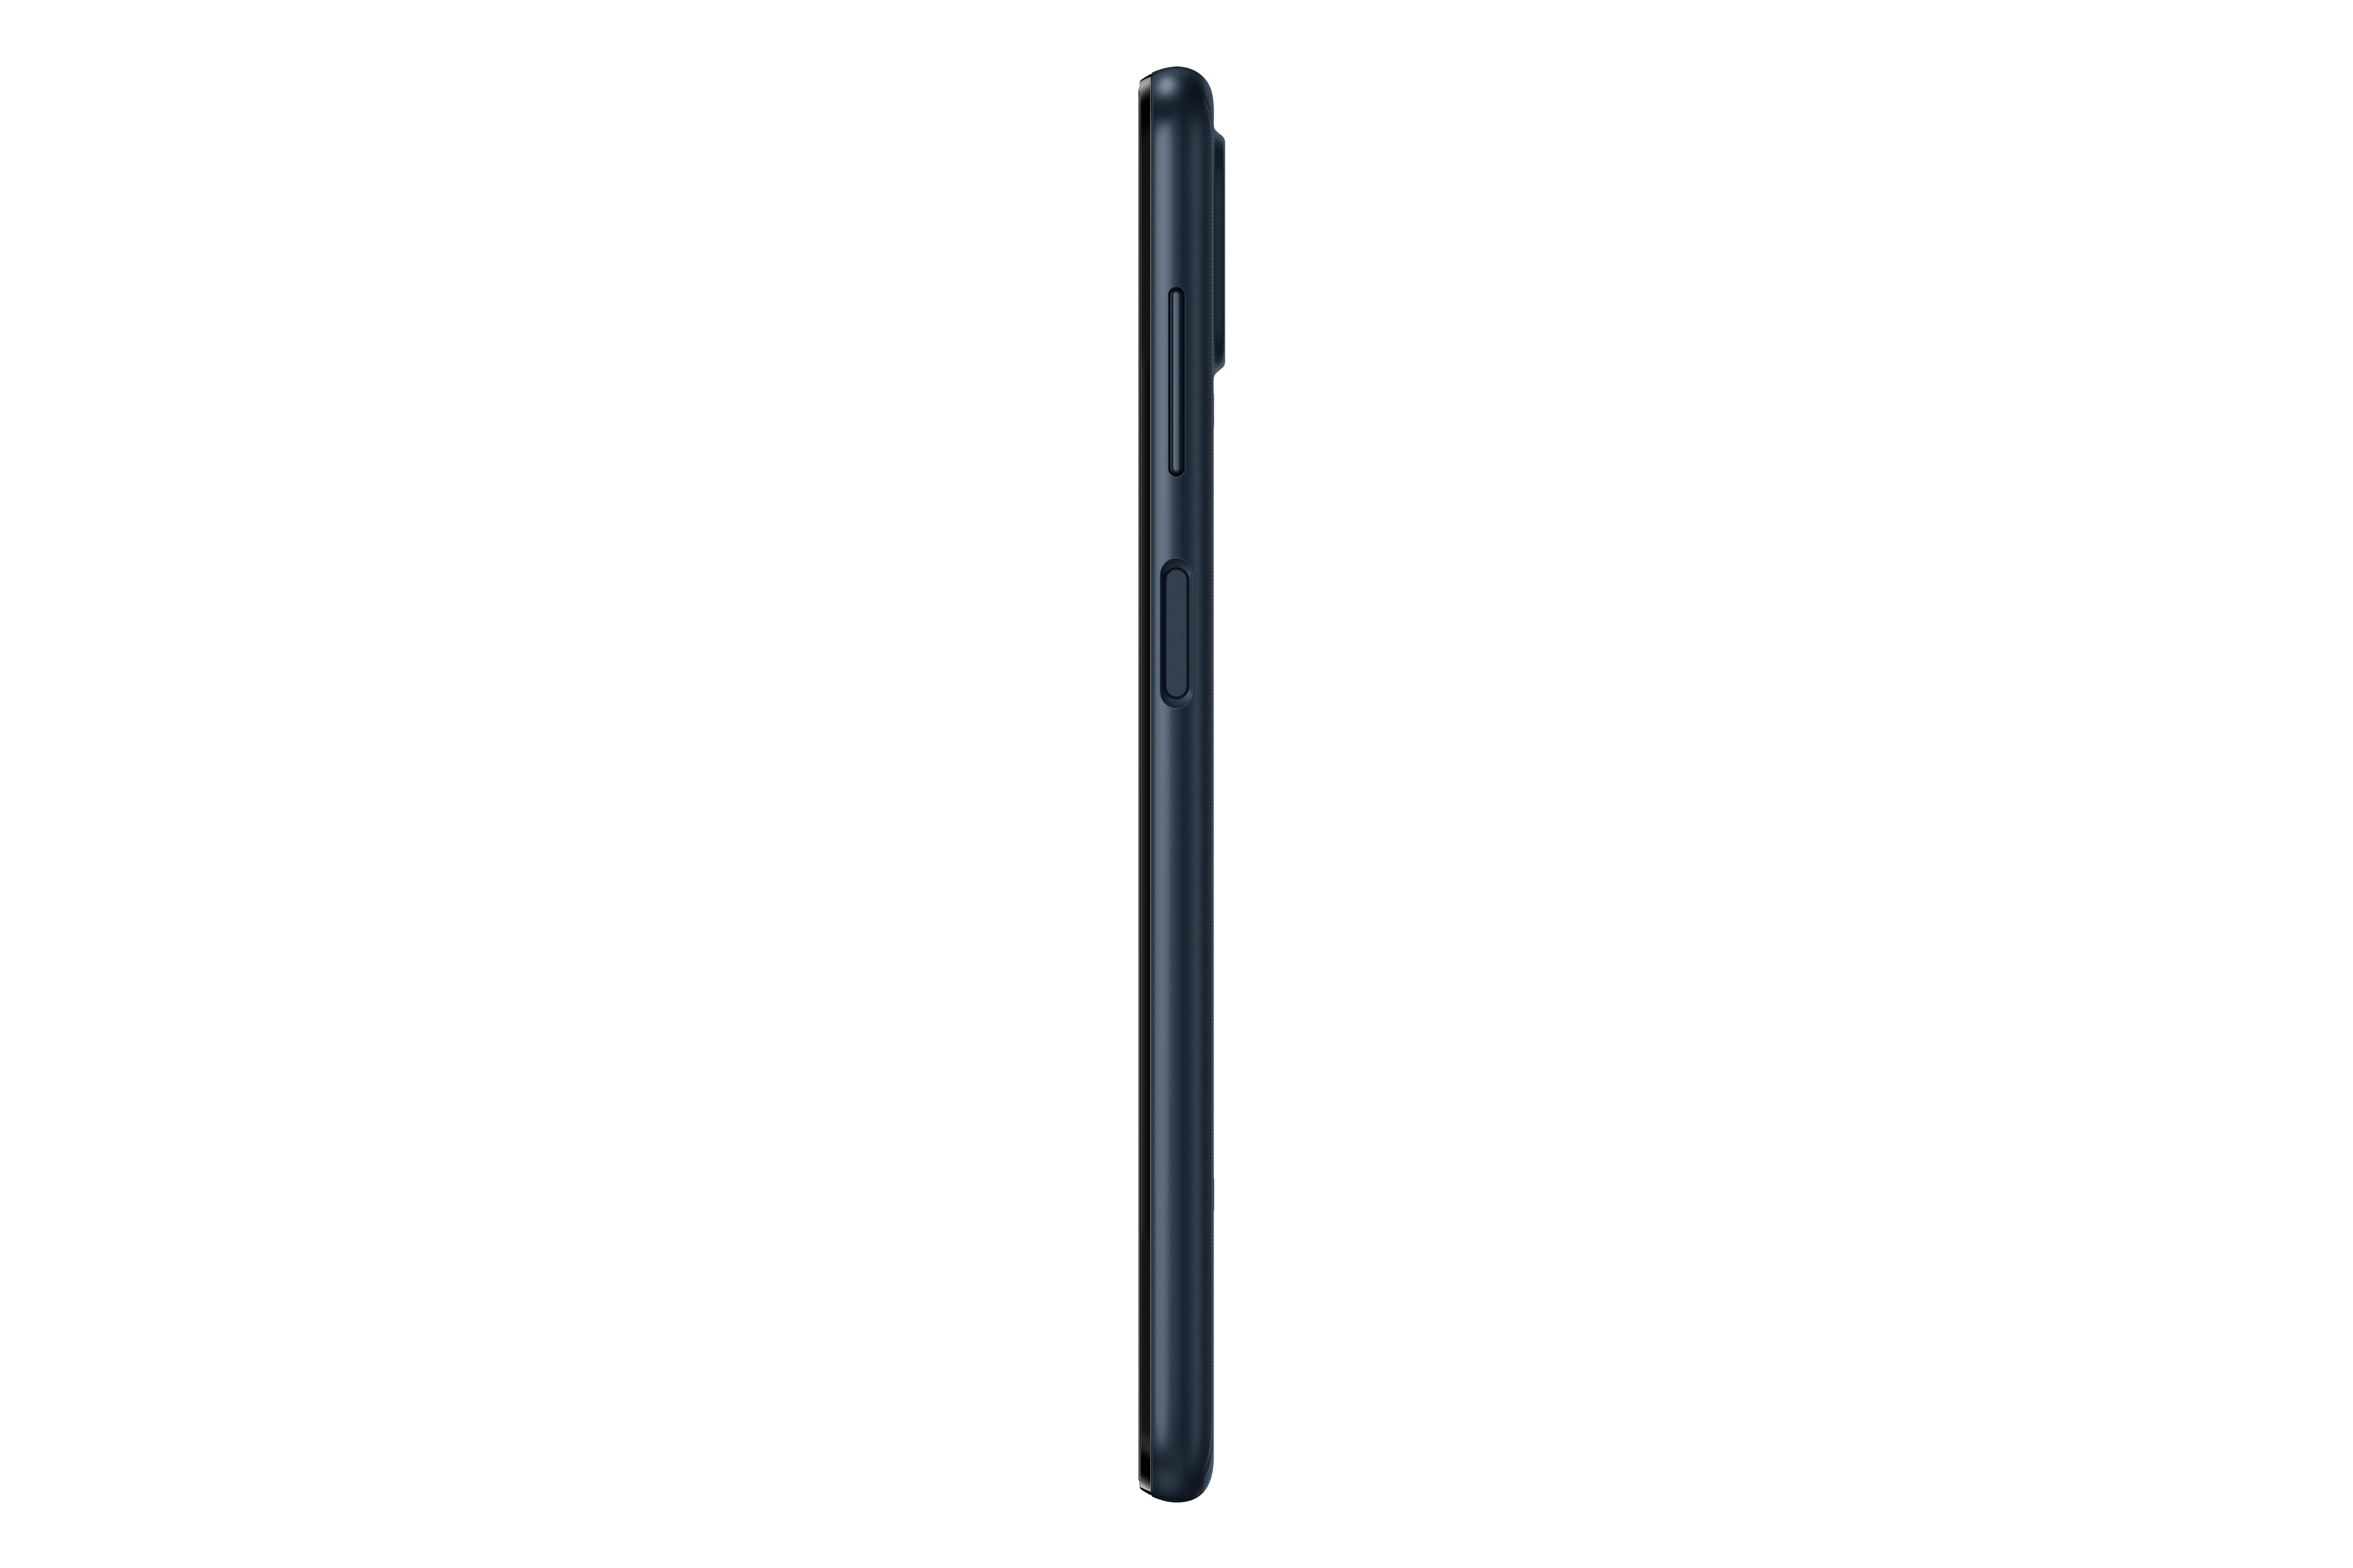 Смартфон Samsung Galaxy A41 4 64gb Черный